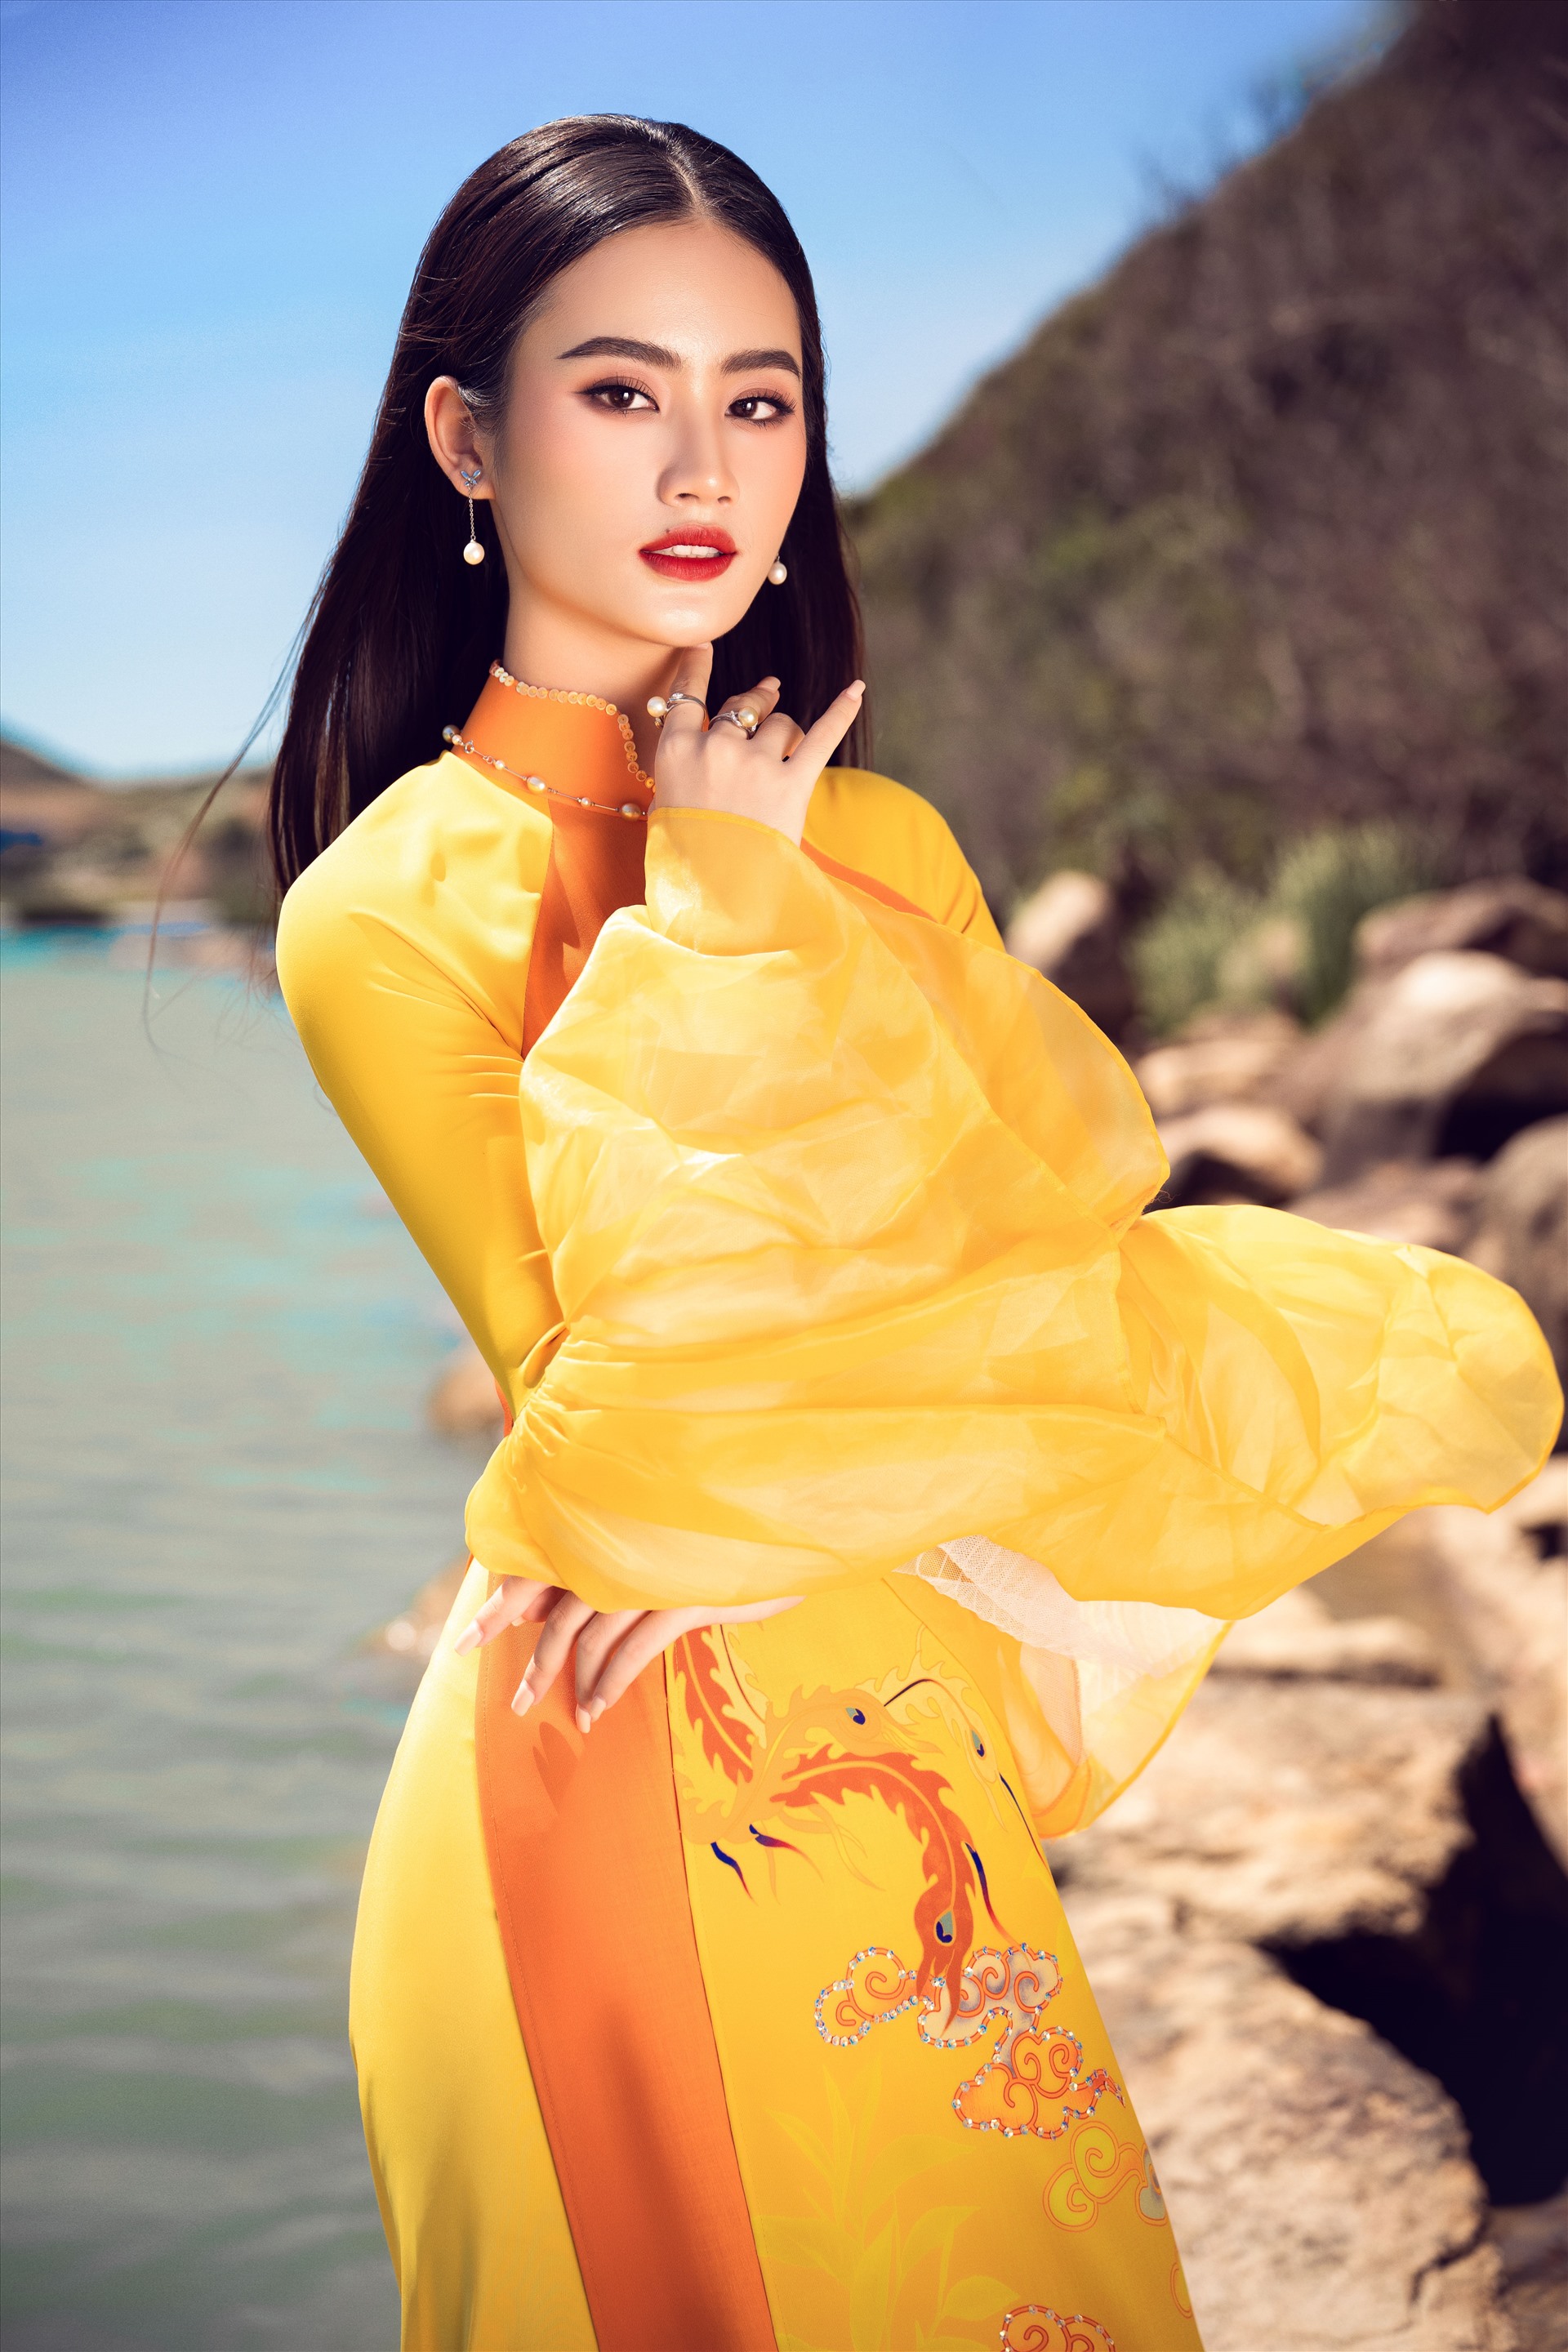 Báo Hàn đưa về loạt phát ngôn lùm xùm của Hoa hậu Ý Nhi, phản ứng của netizen quốc tế gây chú ý - Ảnh 4.